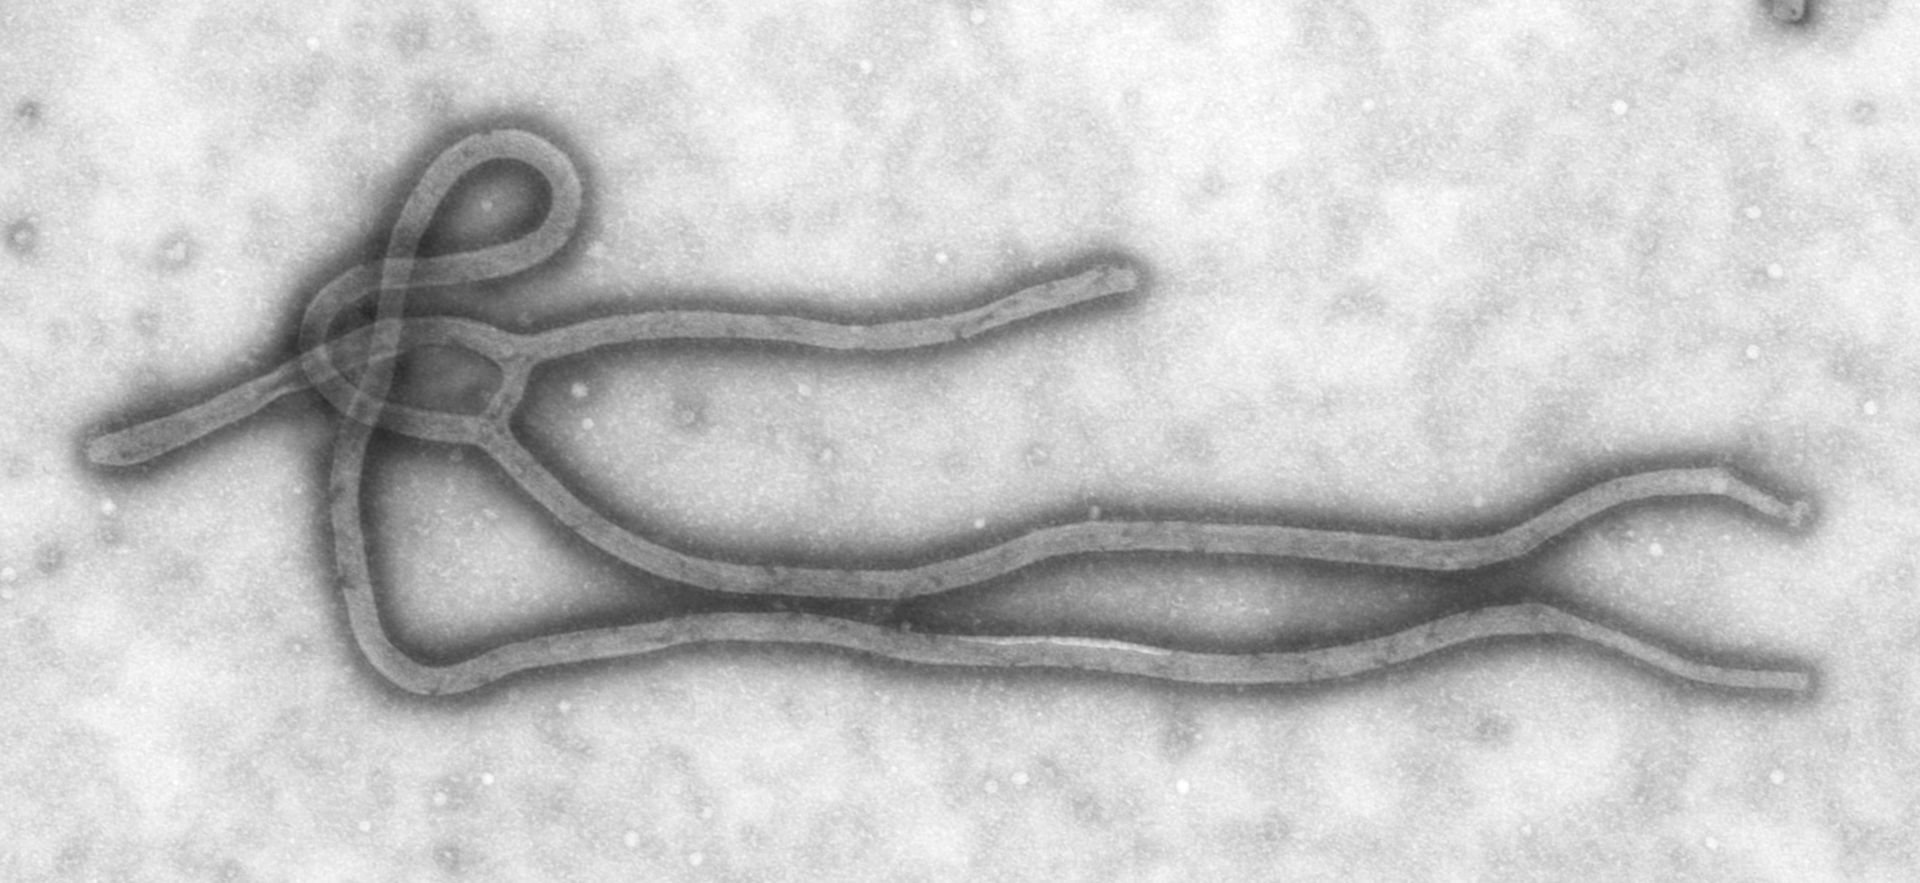 Ebola Virus (TEM)